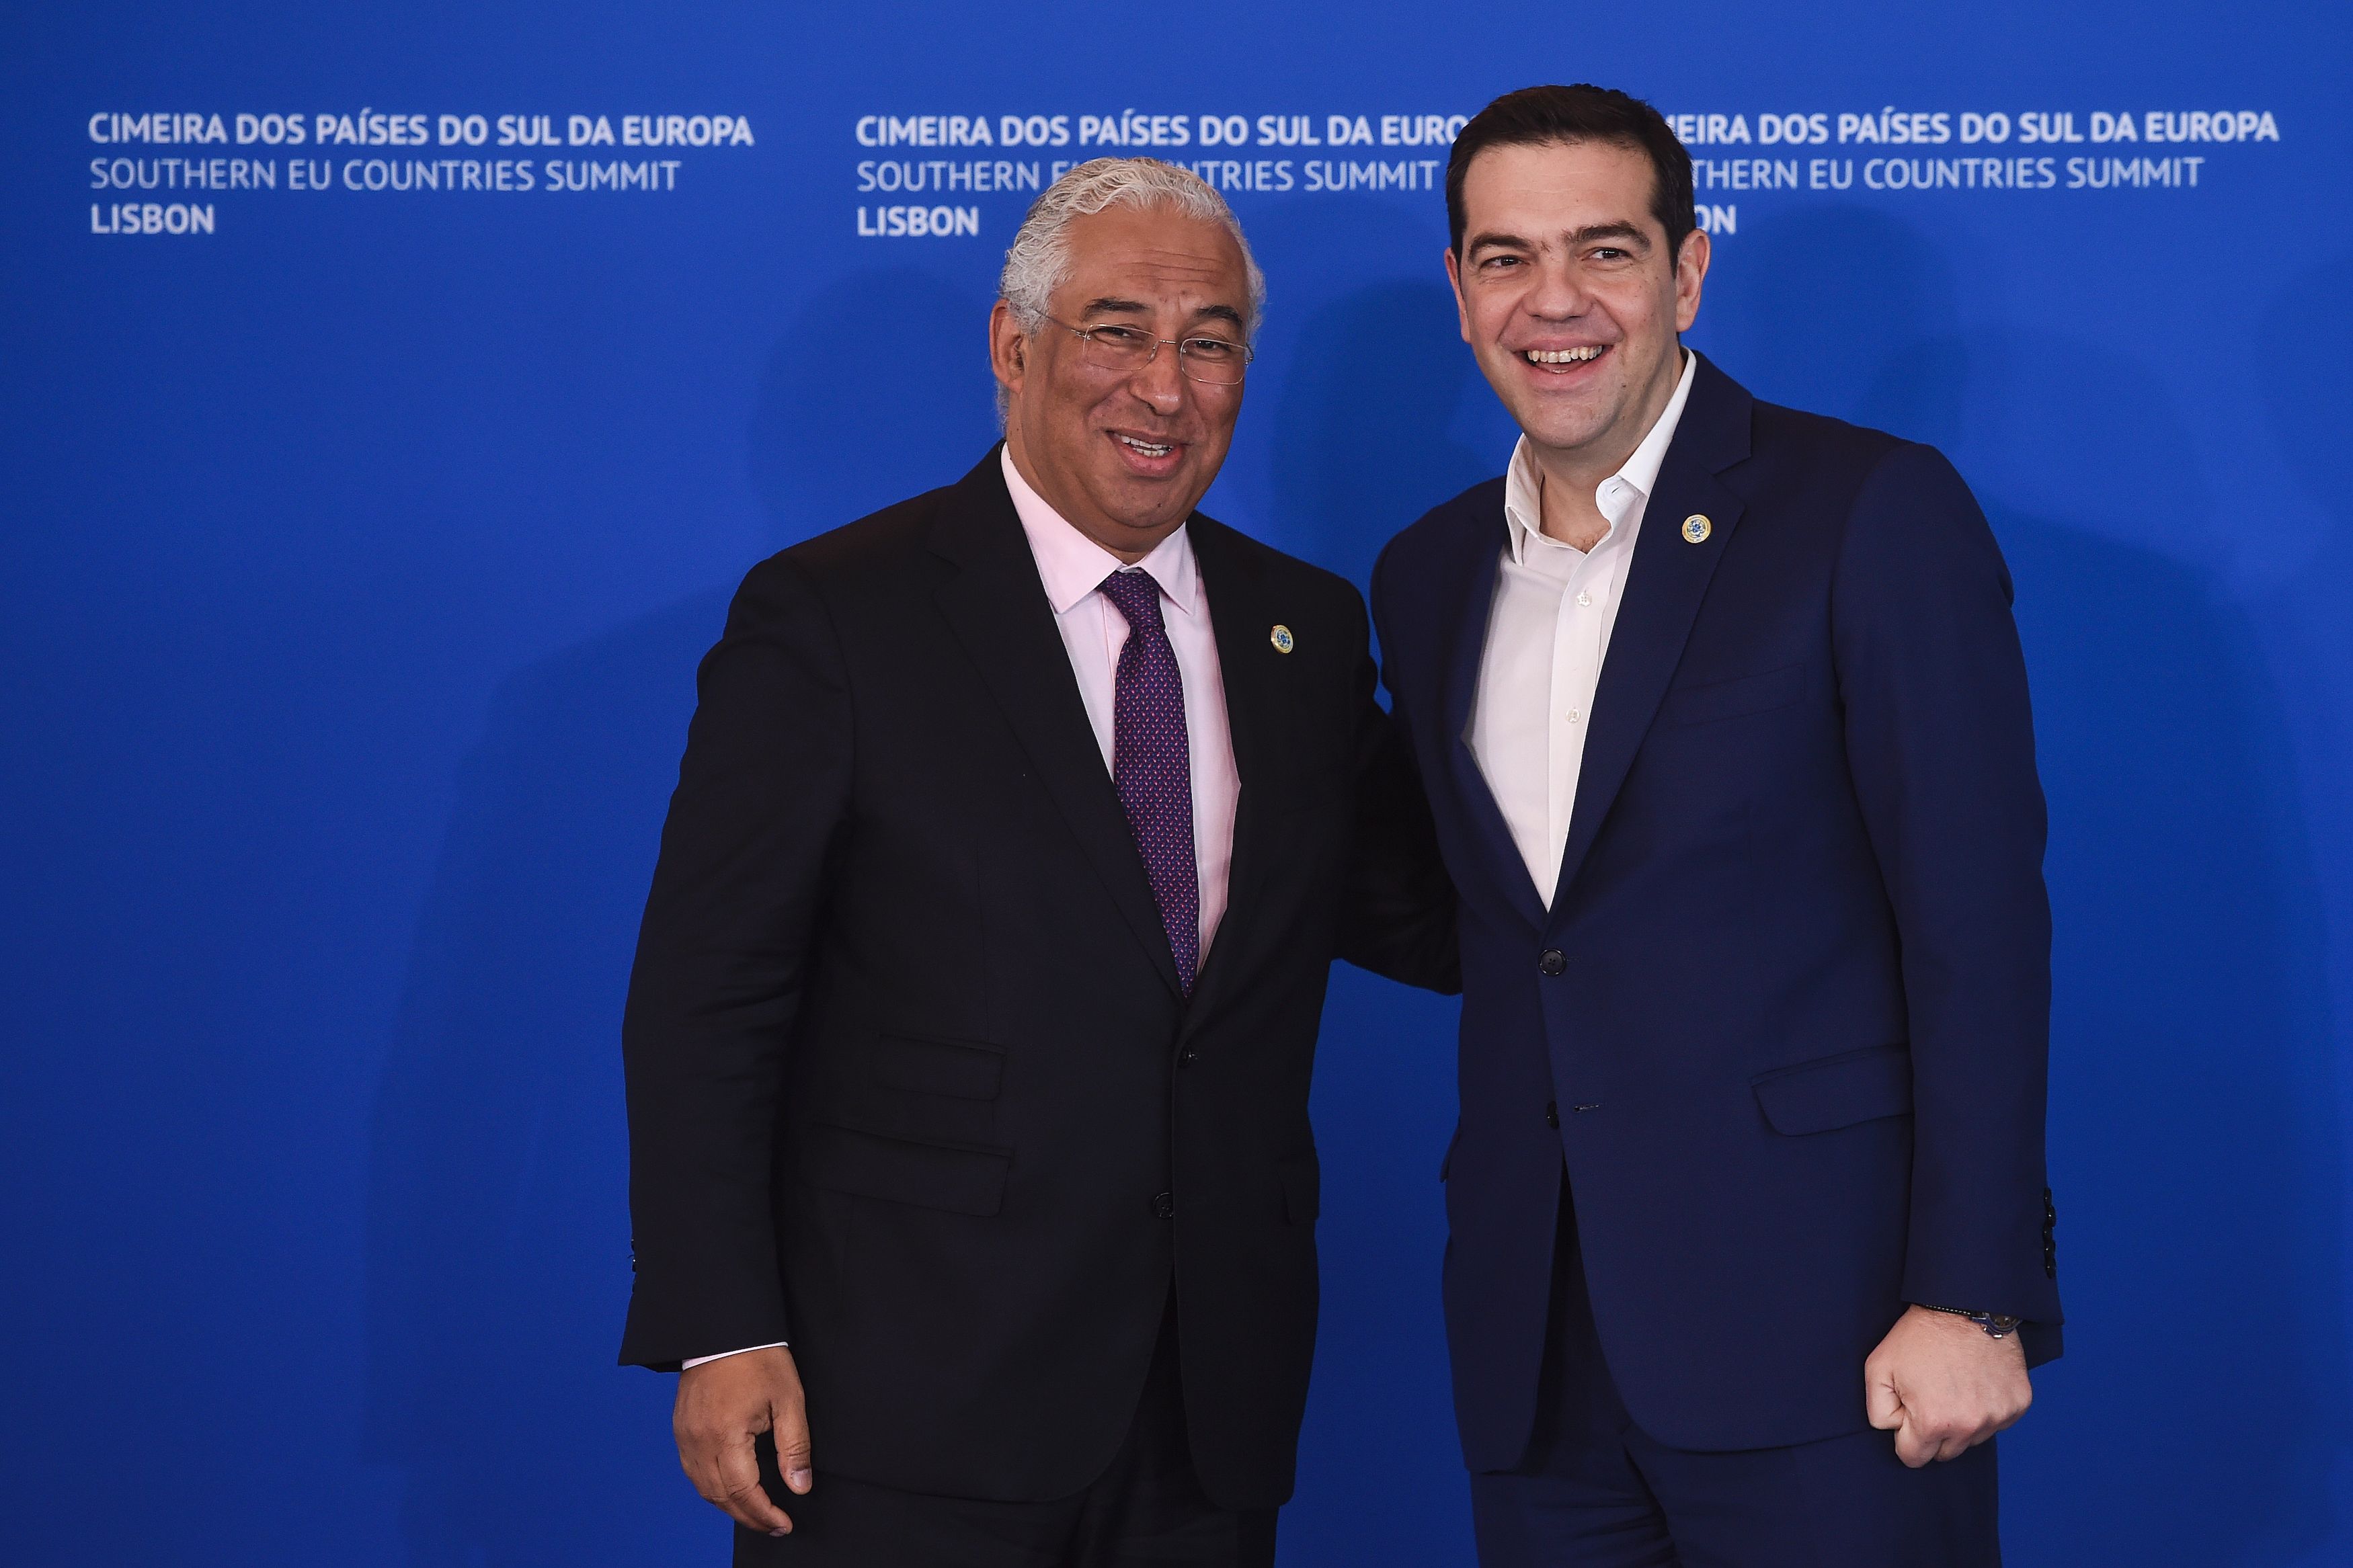 رئيس الوزراء البرتغالي أنطونيو كوستا يستقبل رئيس الوزراء اليوناني أليكسيس تسيبراس